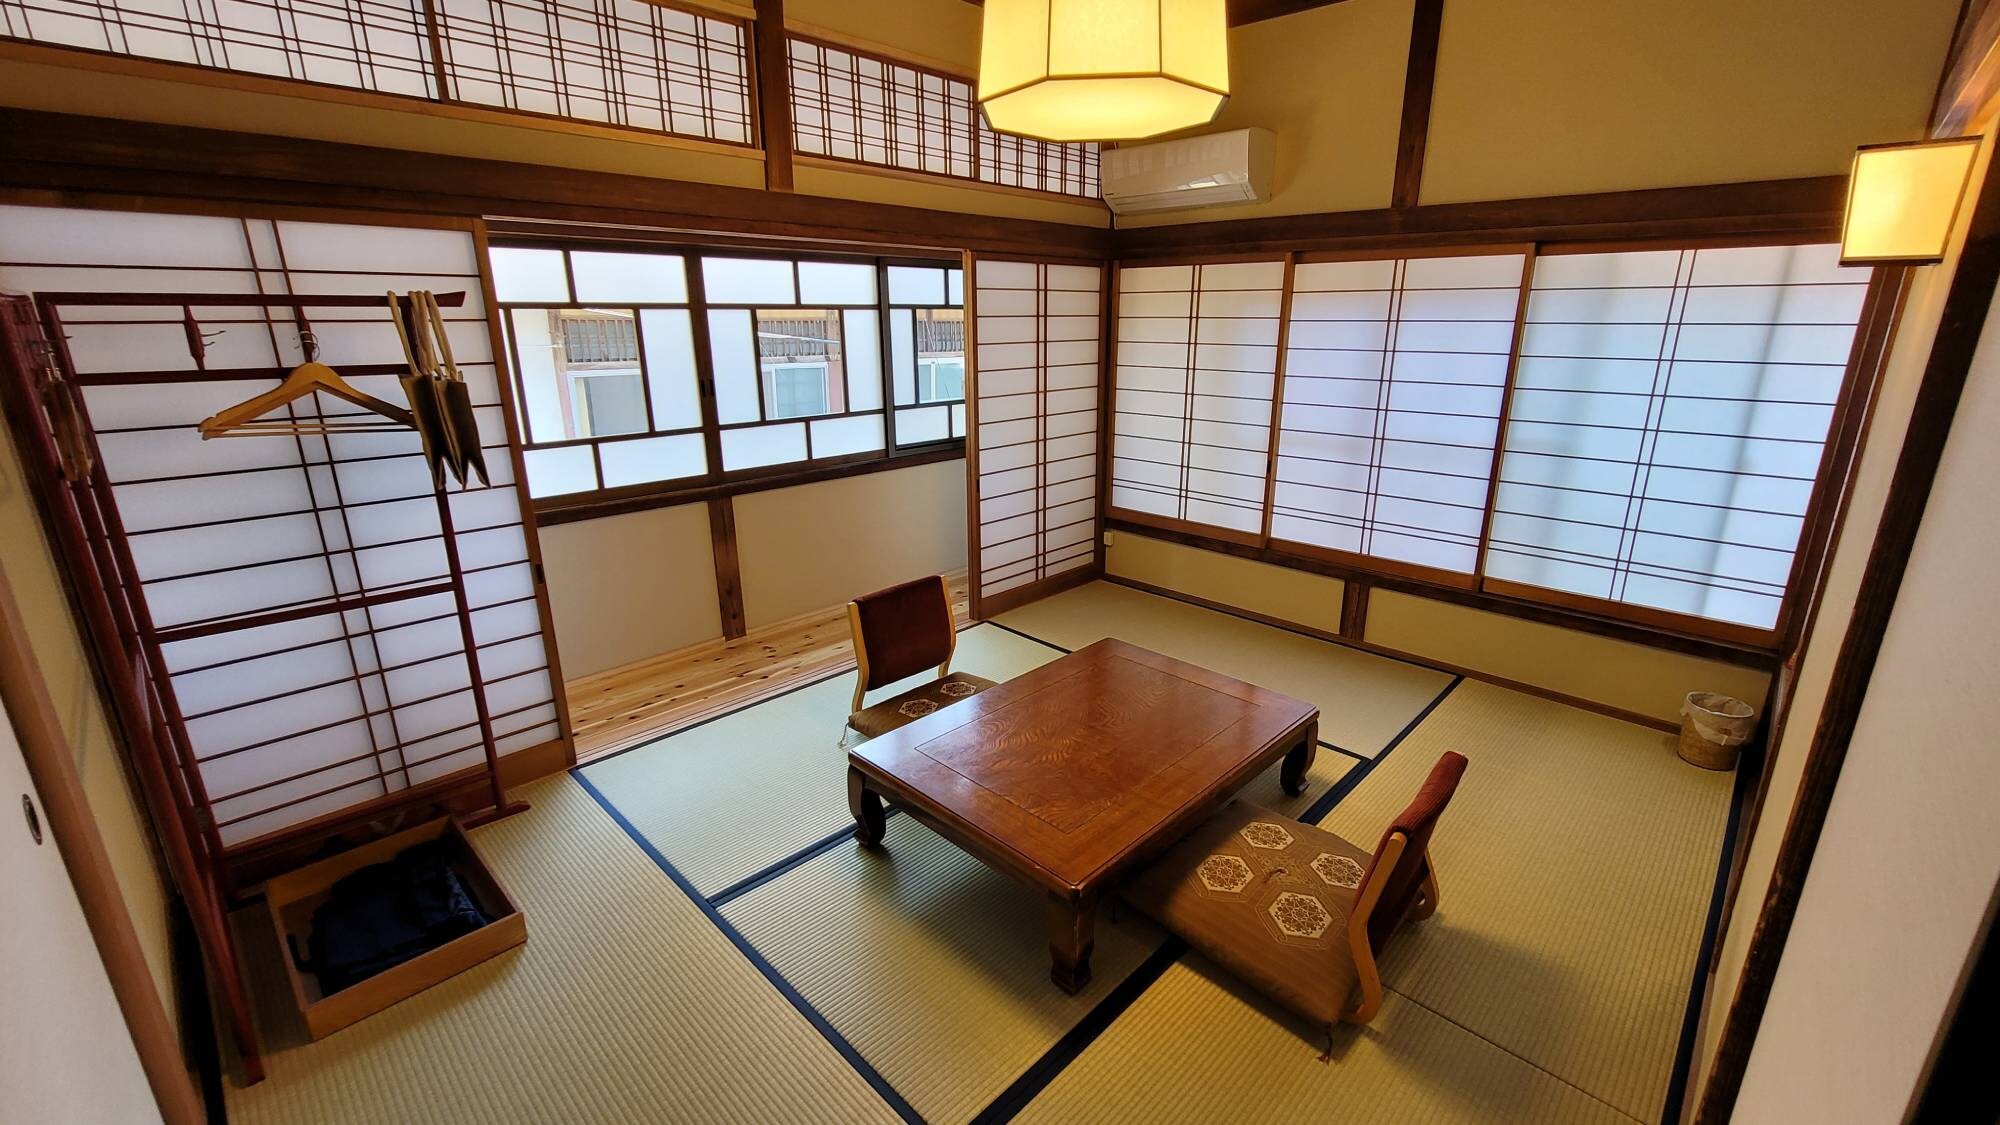 ・[일본식 방 6 다다미] 리뉴얼 한 방에서 일상의 소란을 잊고, 천천히 체류를 즐겨 주세요